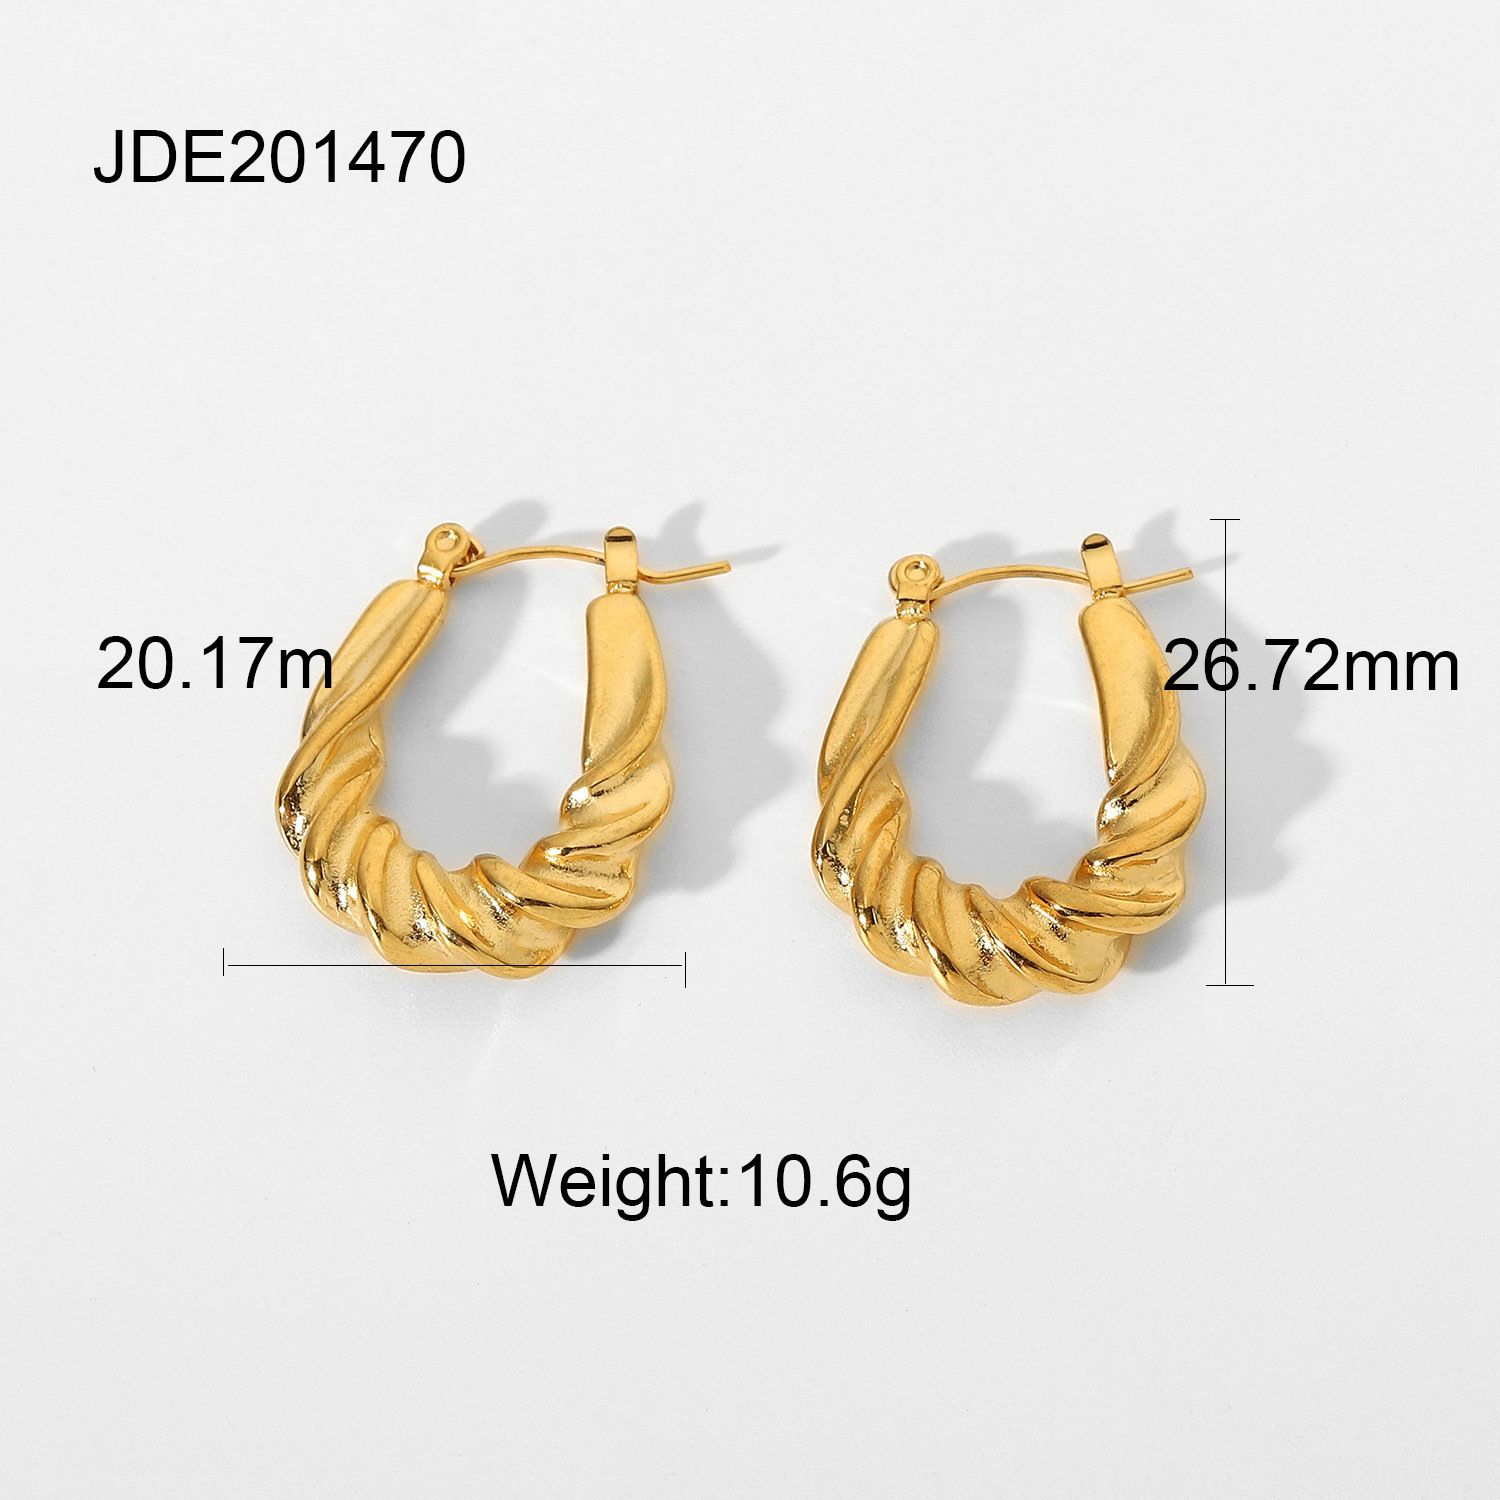 4:JDE201470  20.17x26.72mm